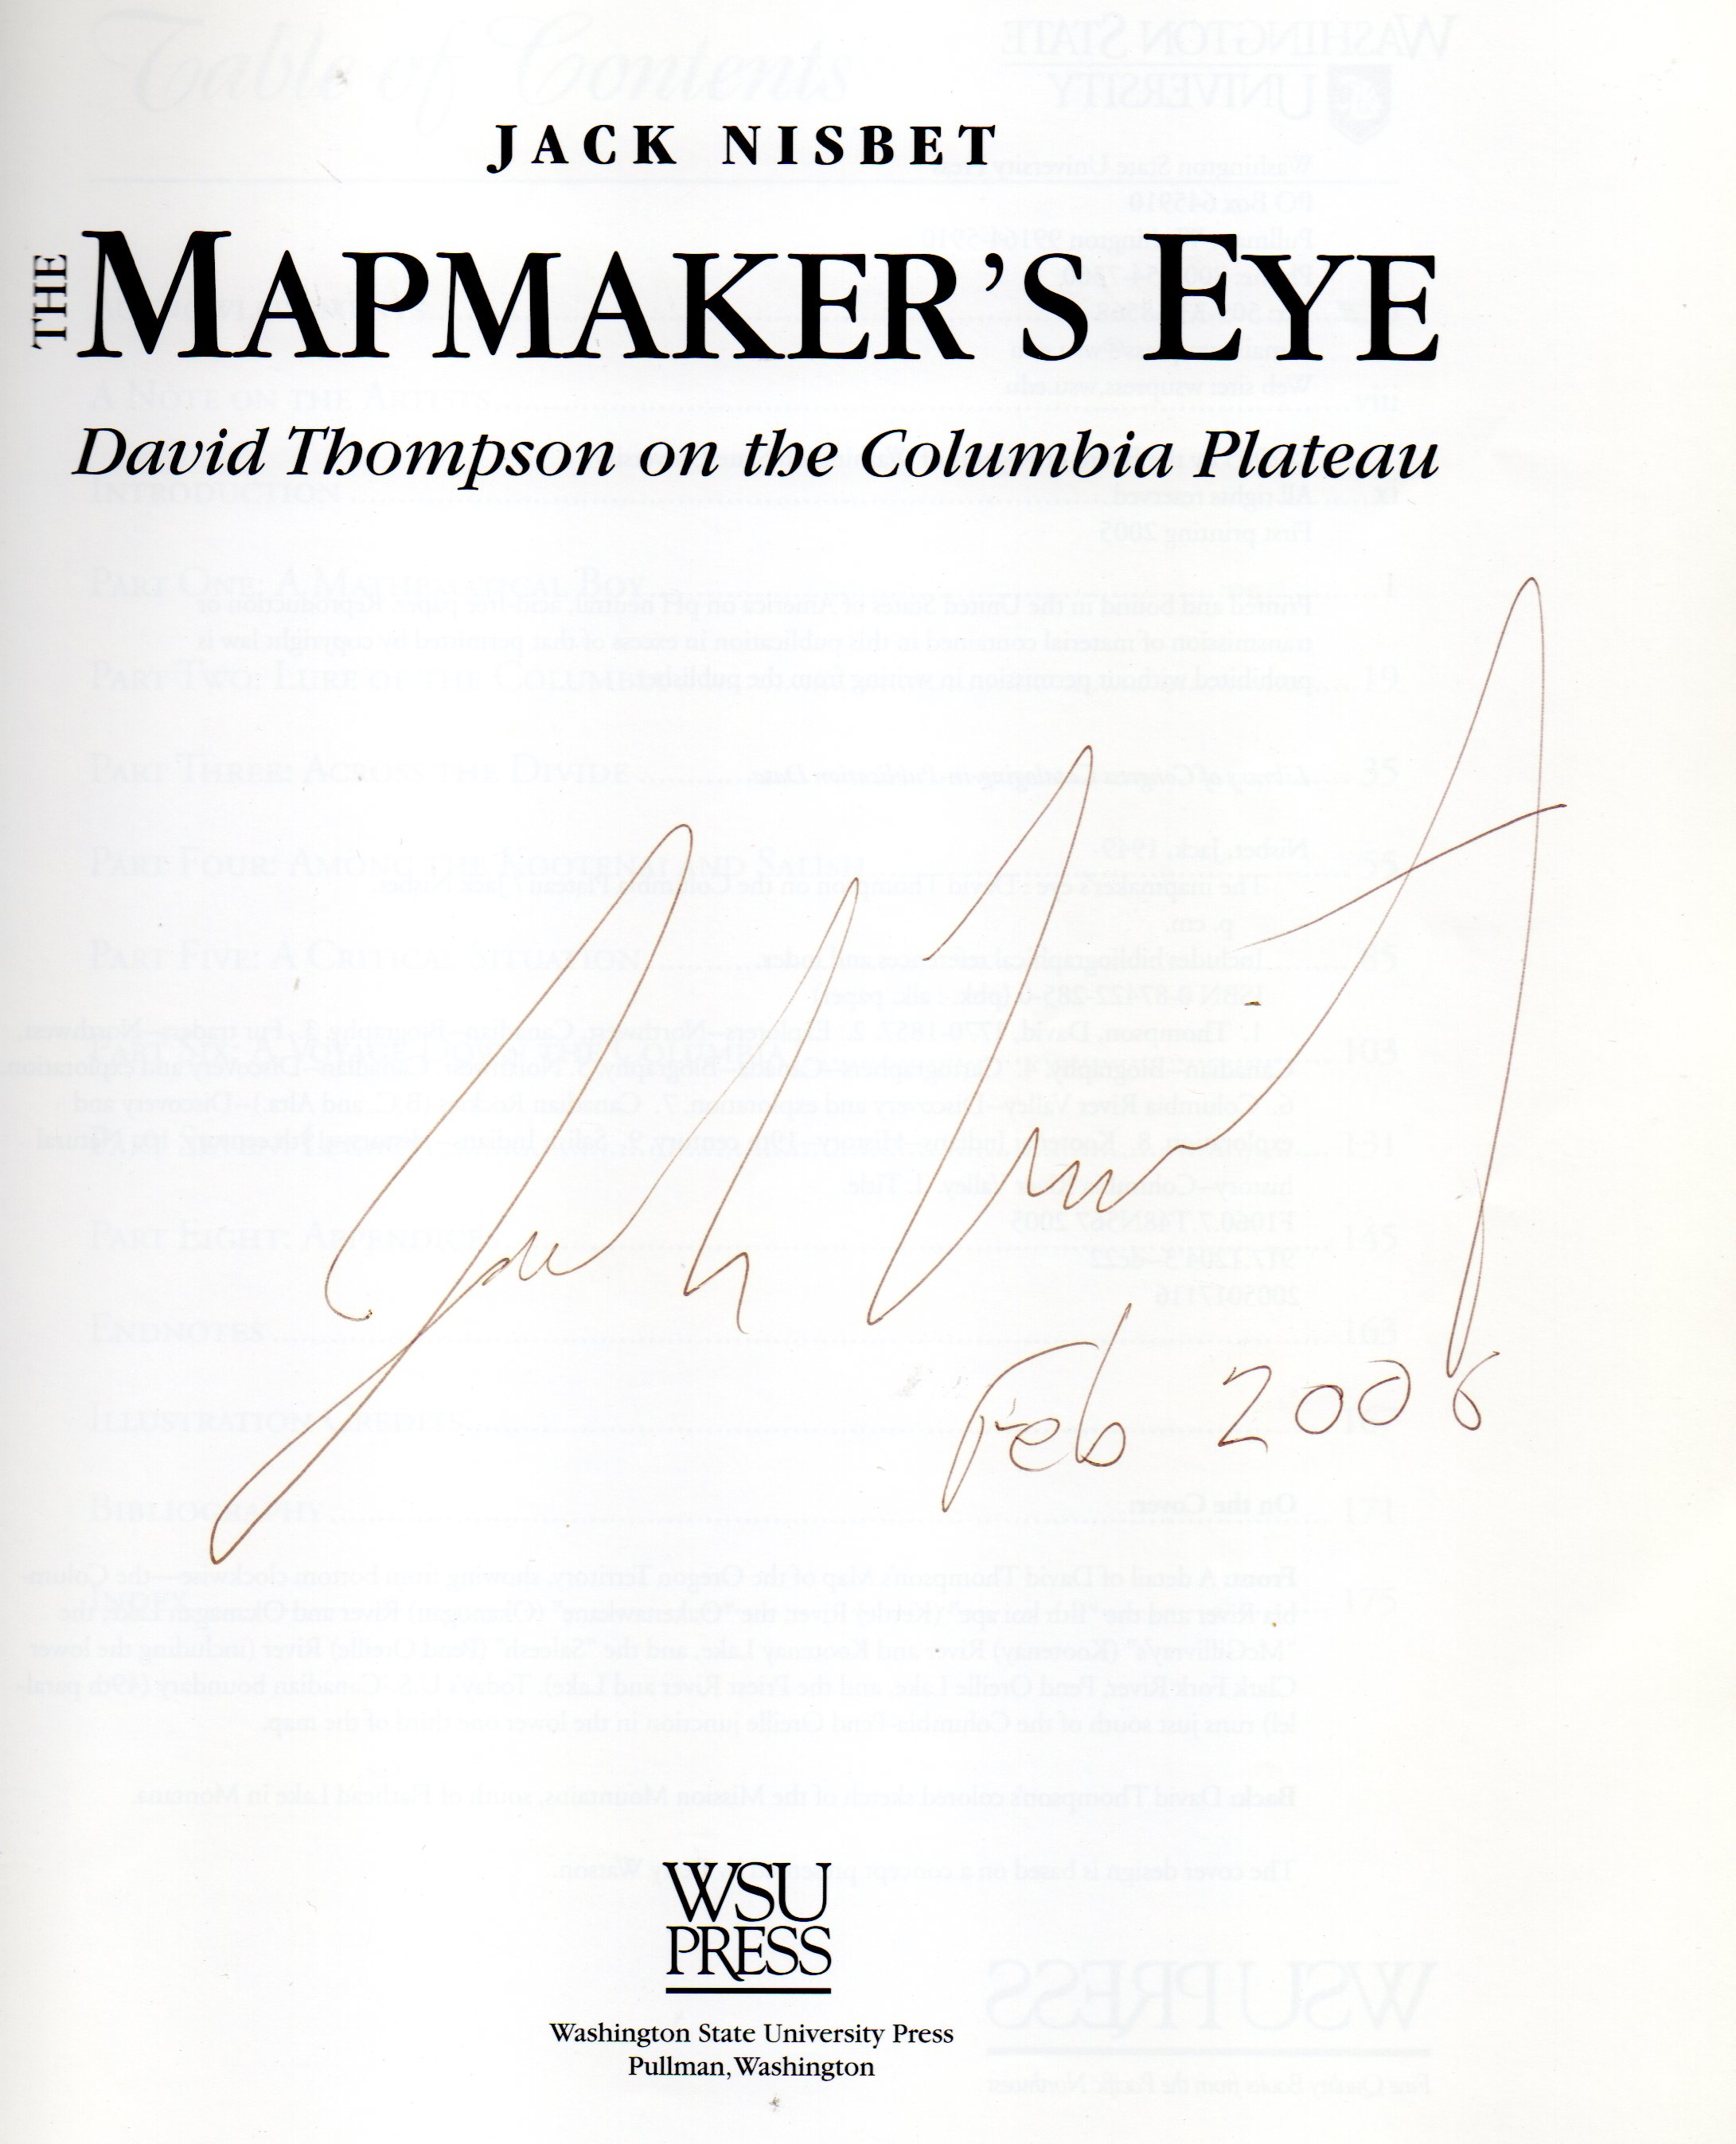 The Mapmaker's Eye, WSU Press